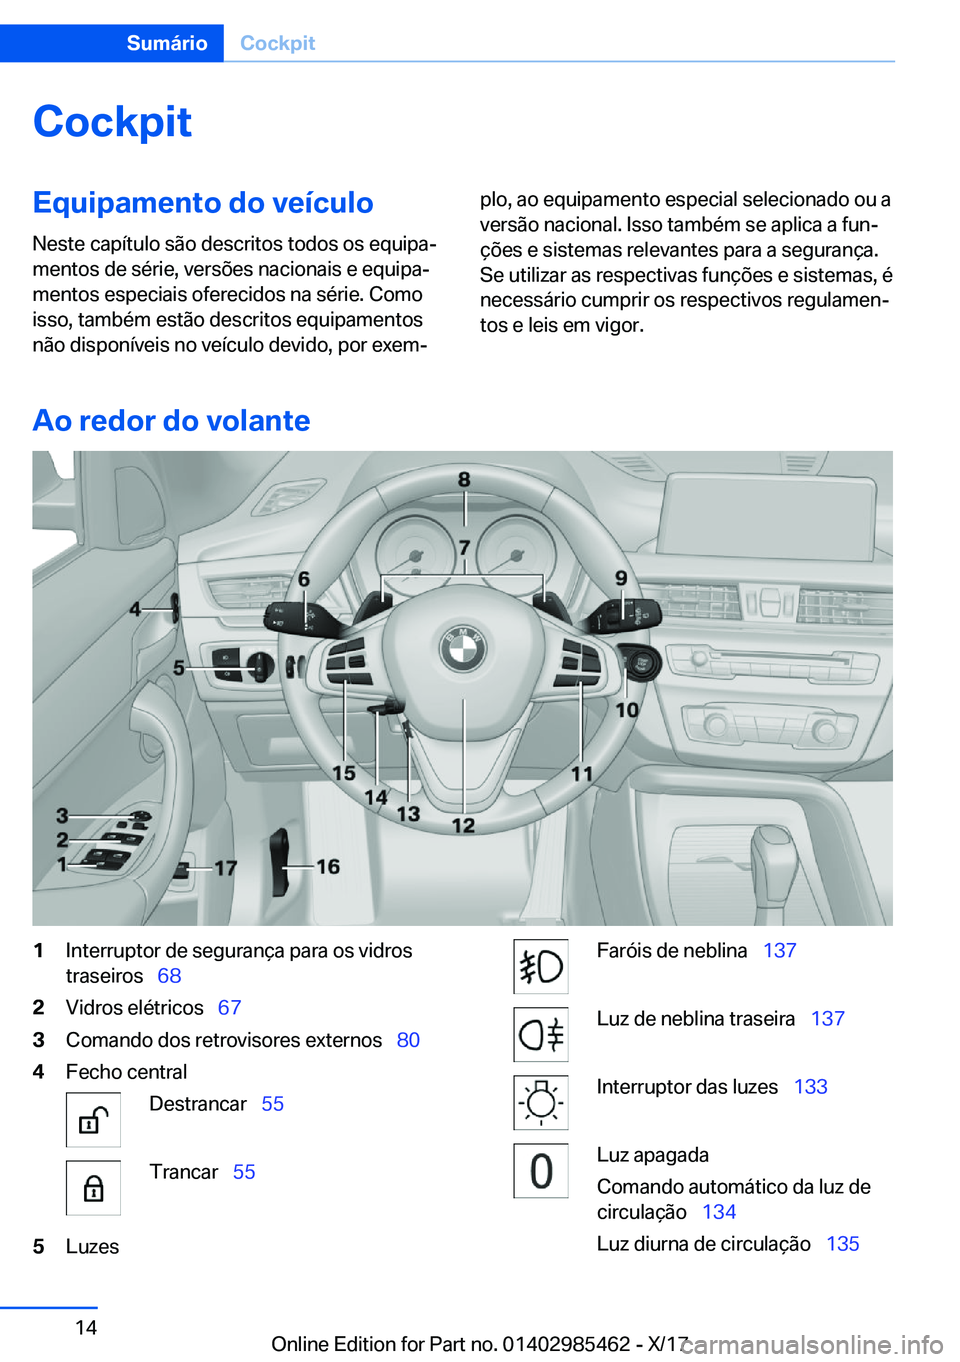 BMW X1 2018  Manual do condutor (in Portuguese) �C�o�c�k�p�i�t�E�q�u�i�p�a�m�e�n�t�o��d�o��v�e�